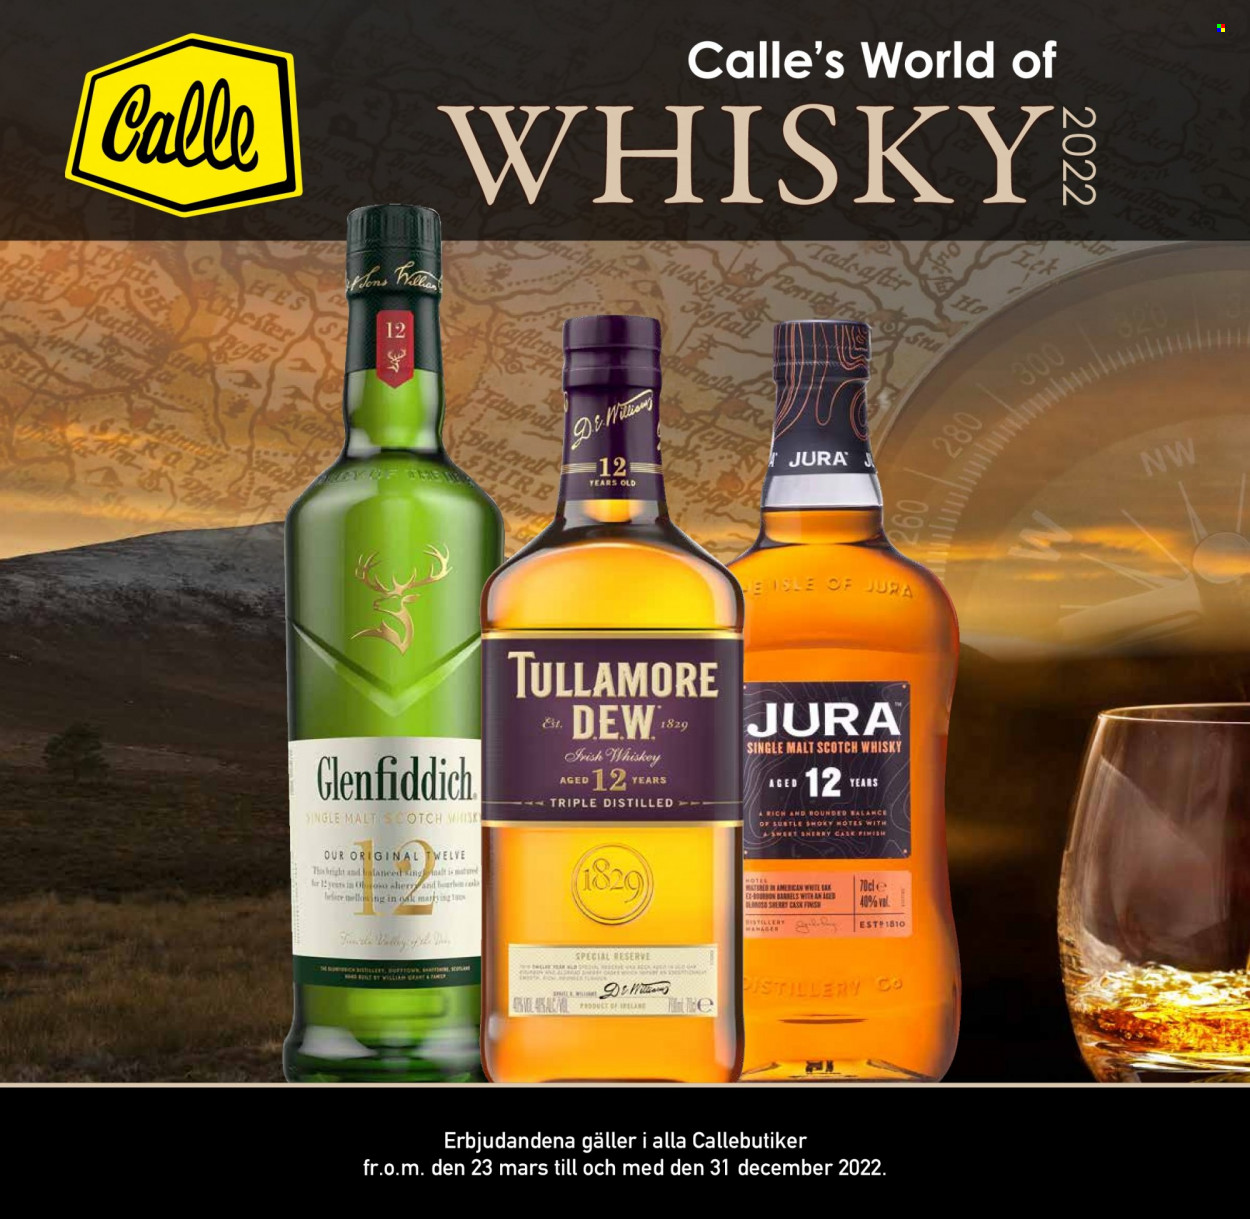 Calle tilbud  - 23.03.2022 - 31.12.2022 - tilbudsprodukter - Mars, scotch whisky, sherry, single malt, whisky, Tullamore D.E.W.. Side 1.